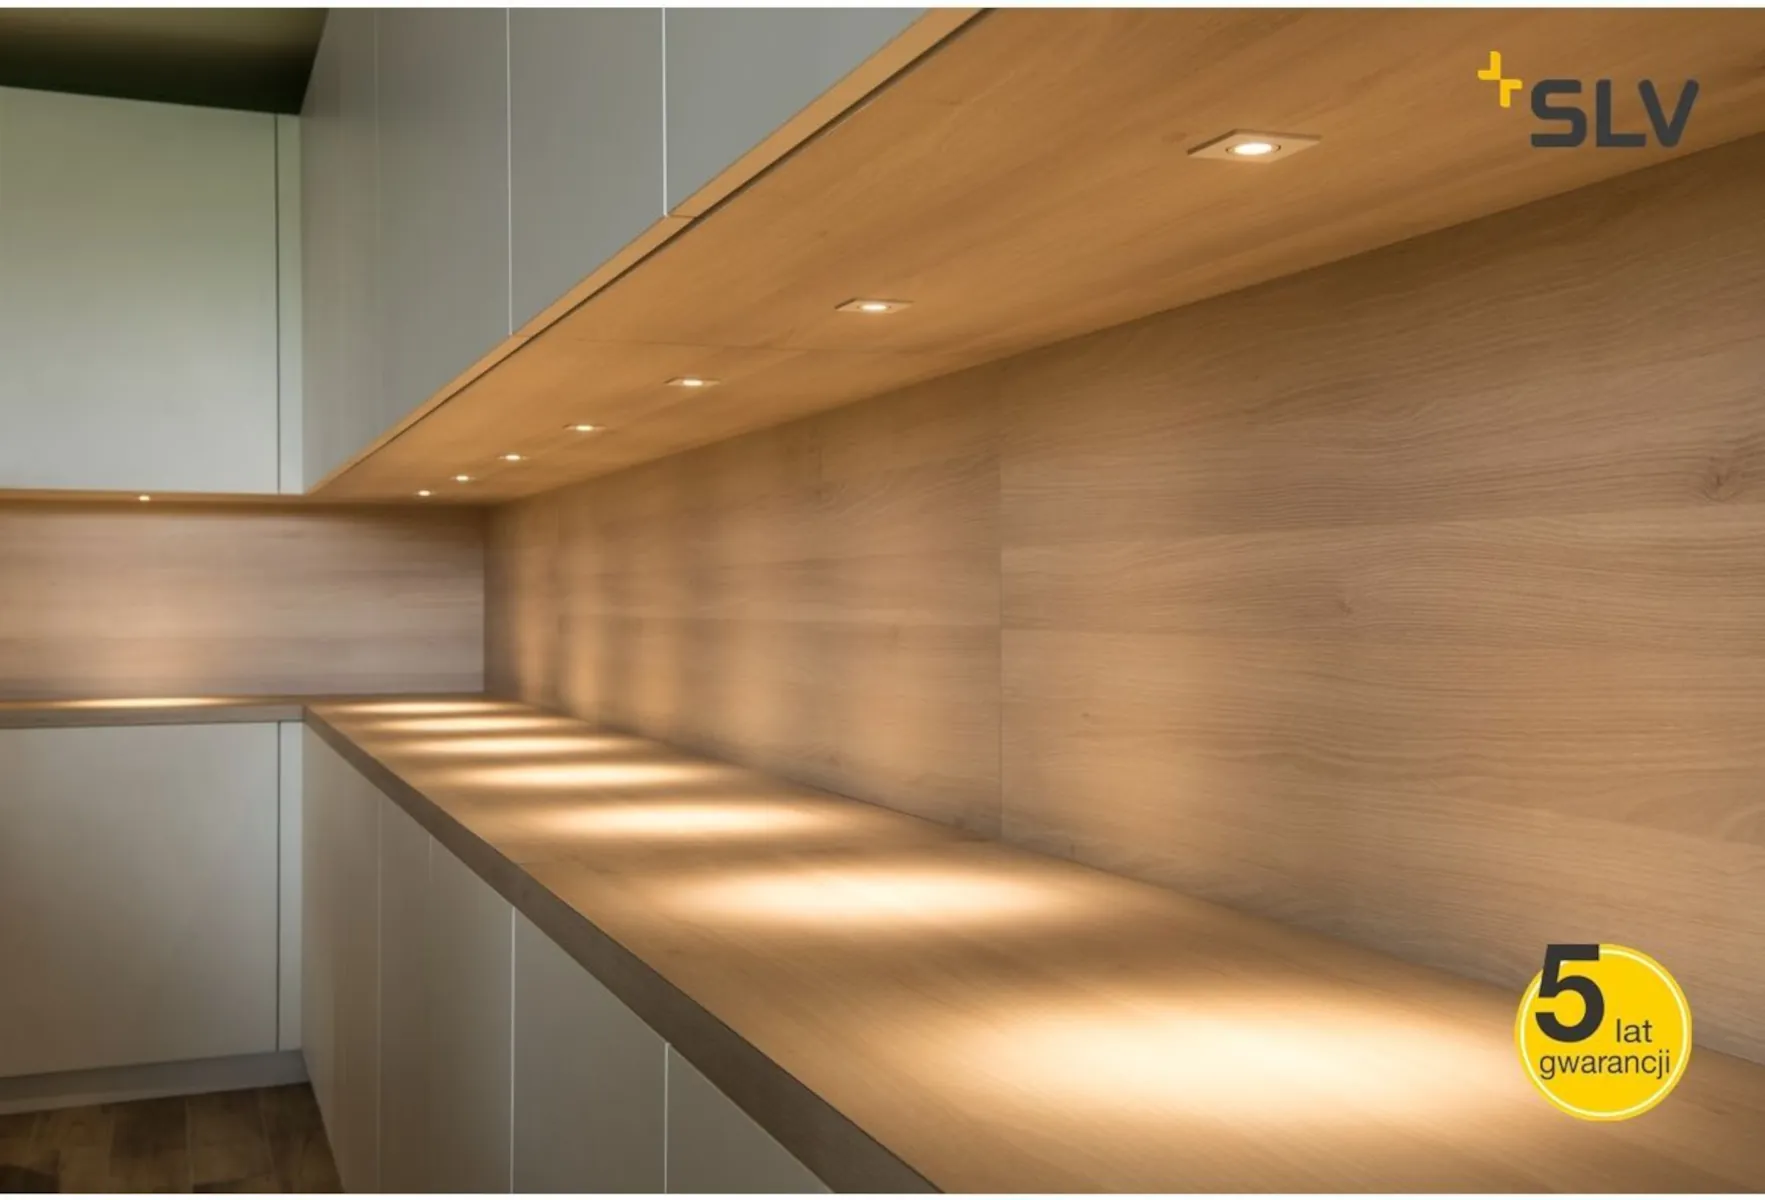 Szekrény alatti világítás a konyhában: Funkcionalitás és esztétika